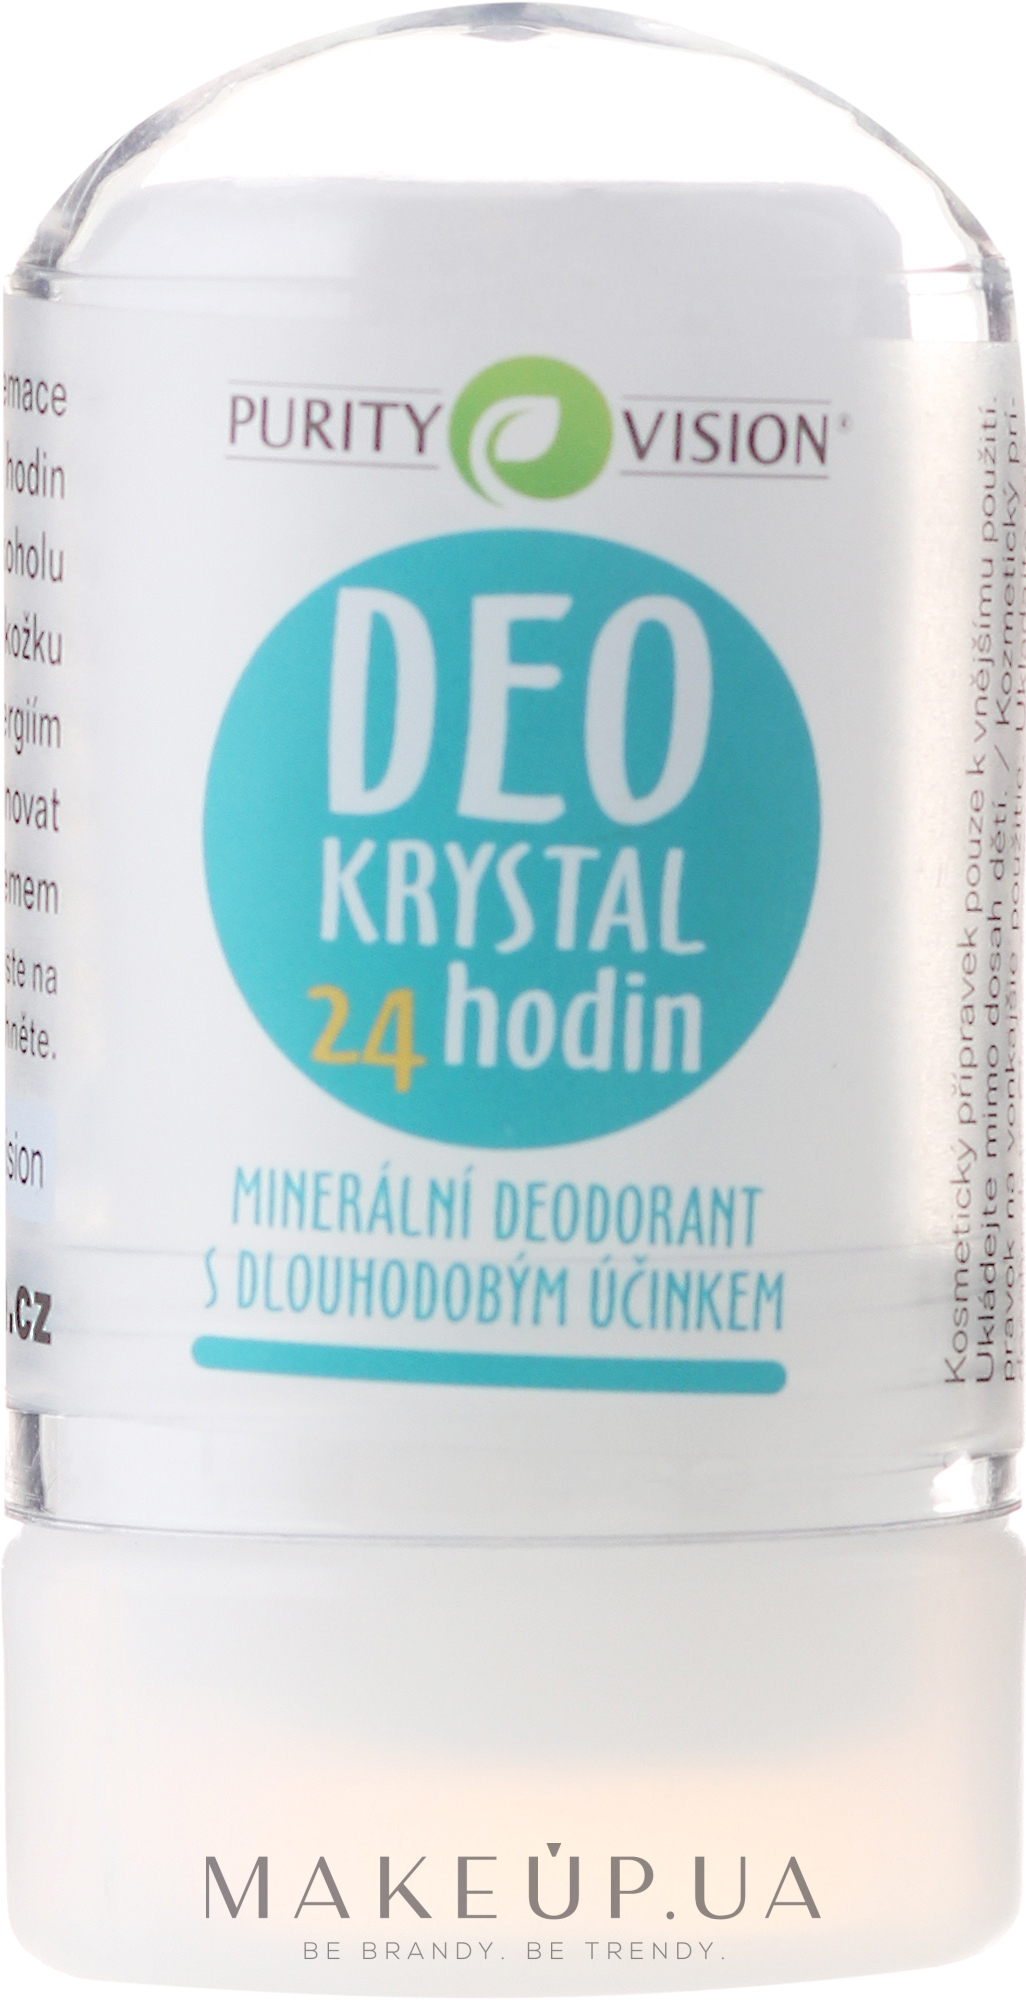 Минеральный дезодорант - Purity Vision Deo Krystal 24 Hour Mineral Deodorant  — фото 60g